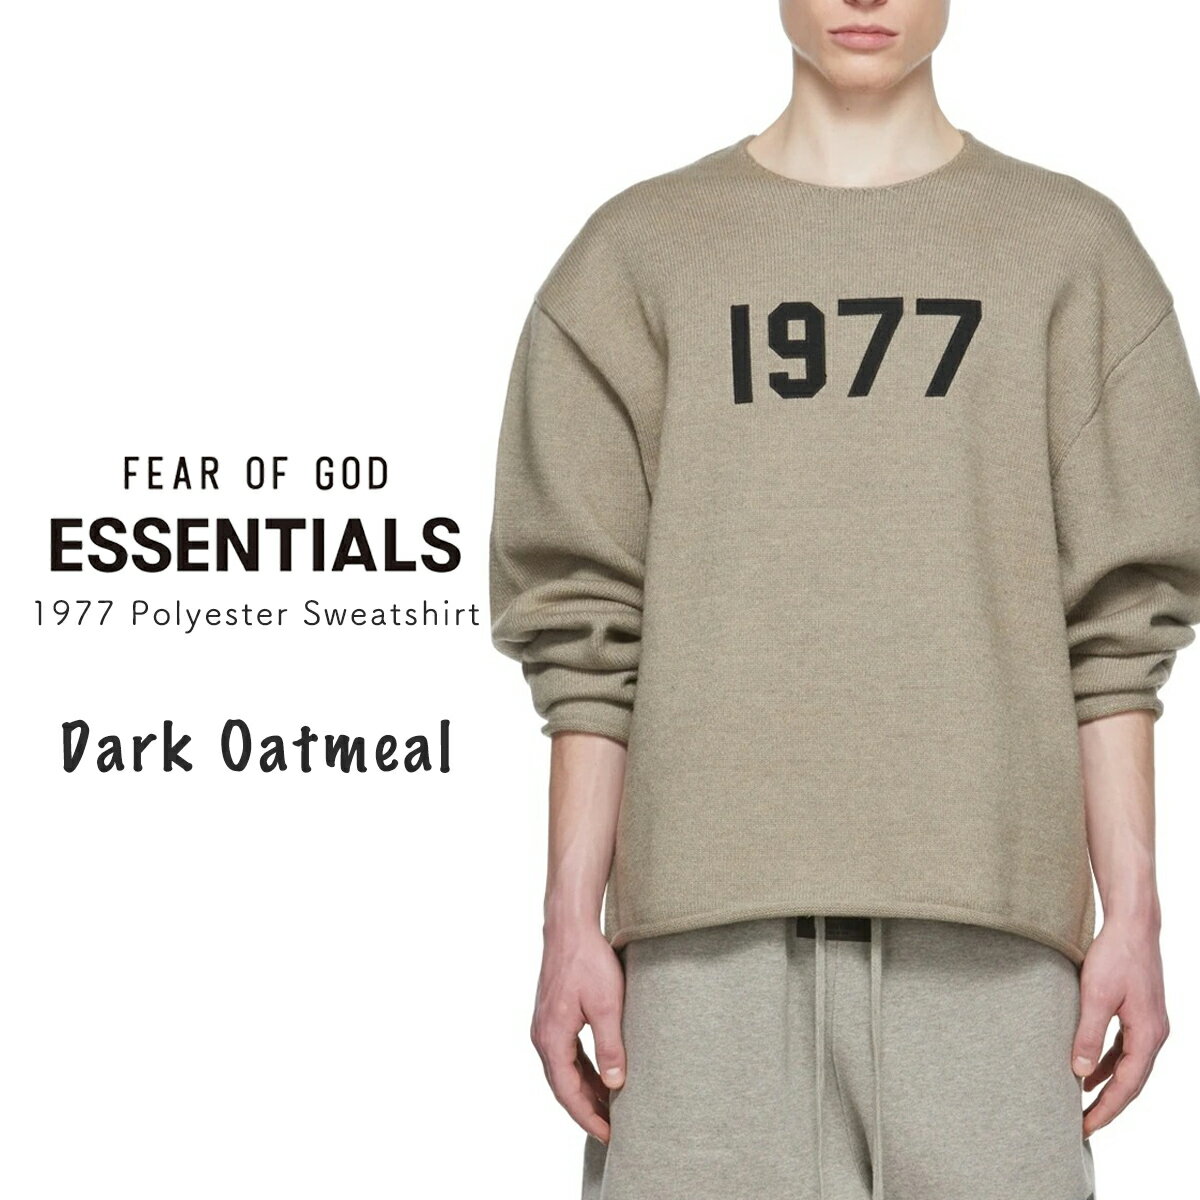 エッセンシャルズ ポリエステル スウェットシャツ FOG ESSENTIALS 1977 長袖 オーバーサイズ ニット グレー メンズ レディース フィアオブゴッド 正規品 Fear Of God Essentials 衣類